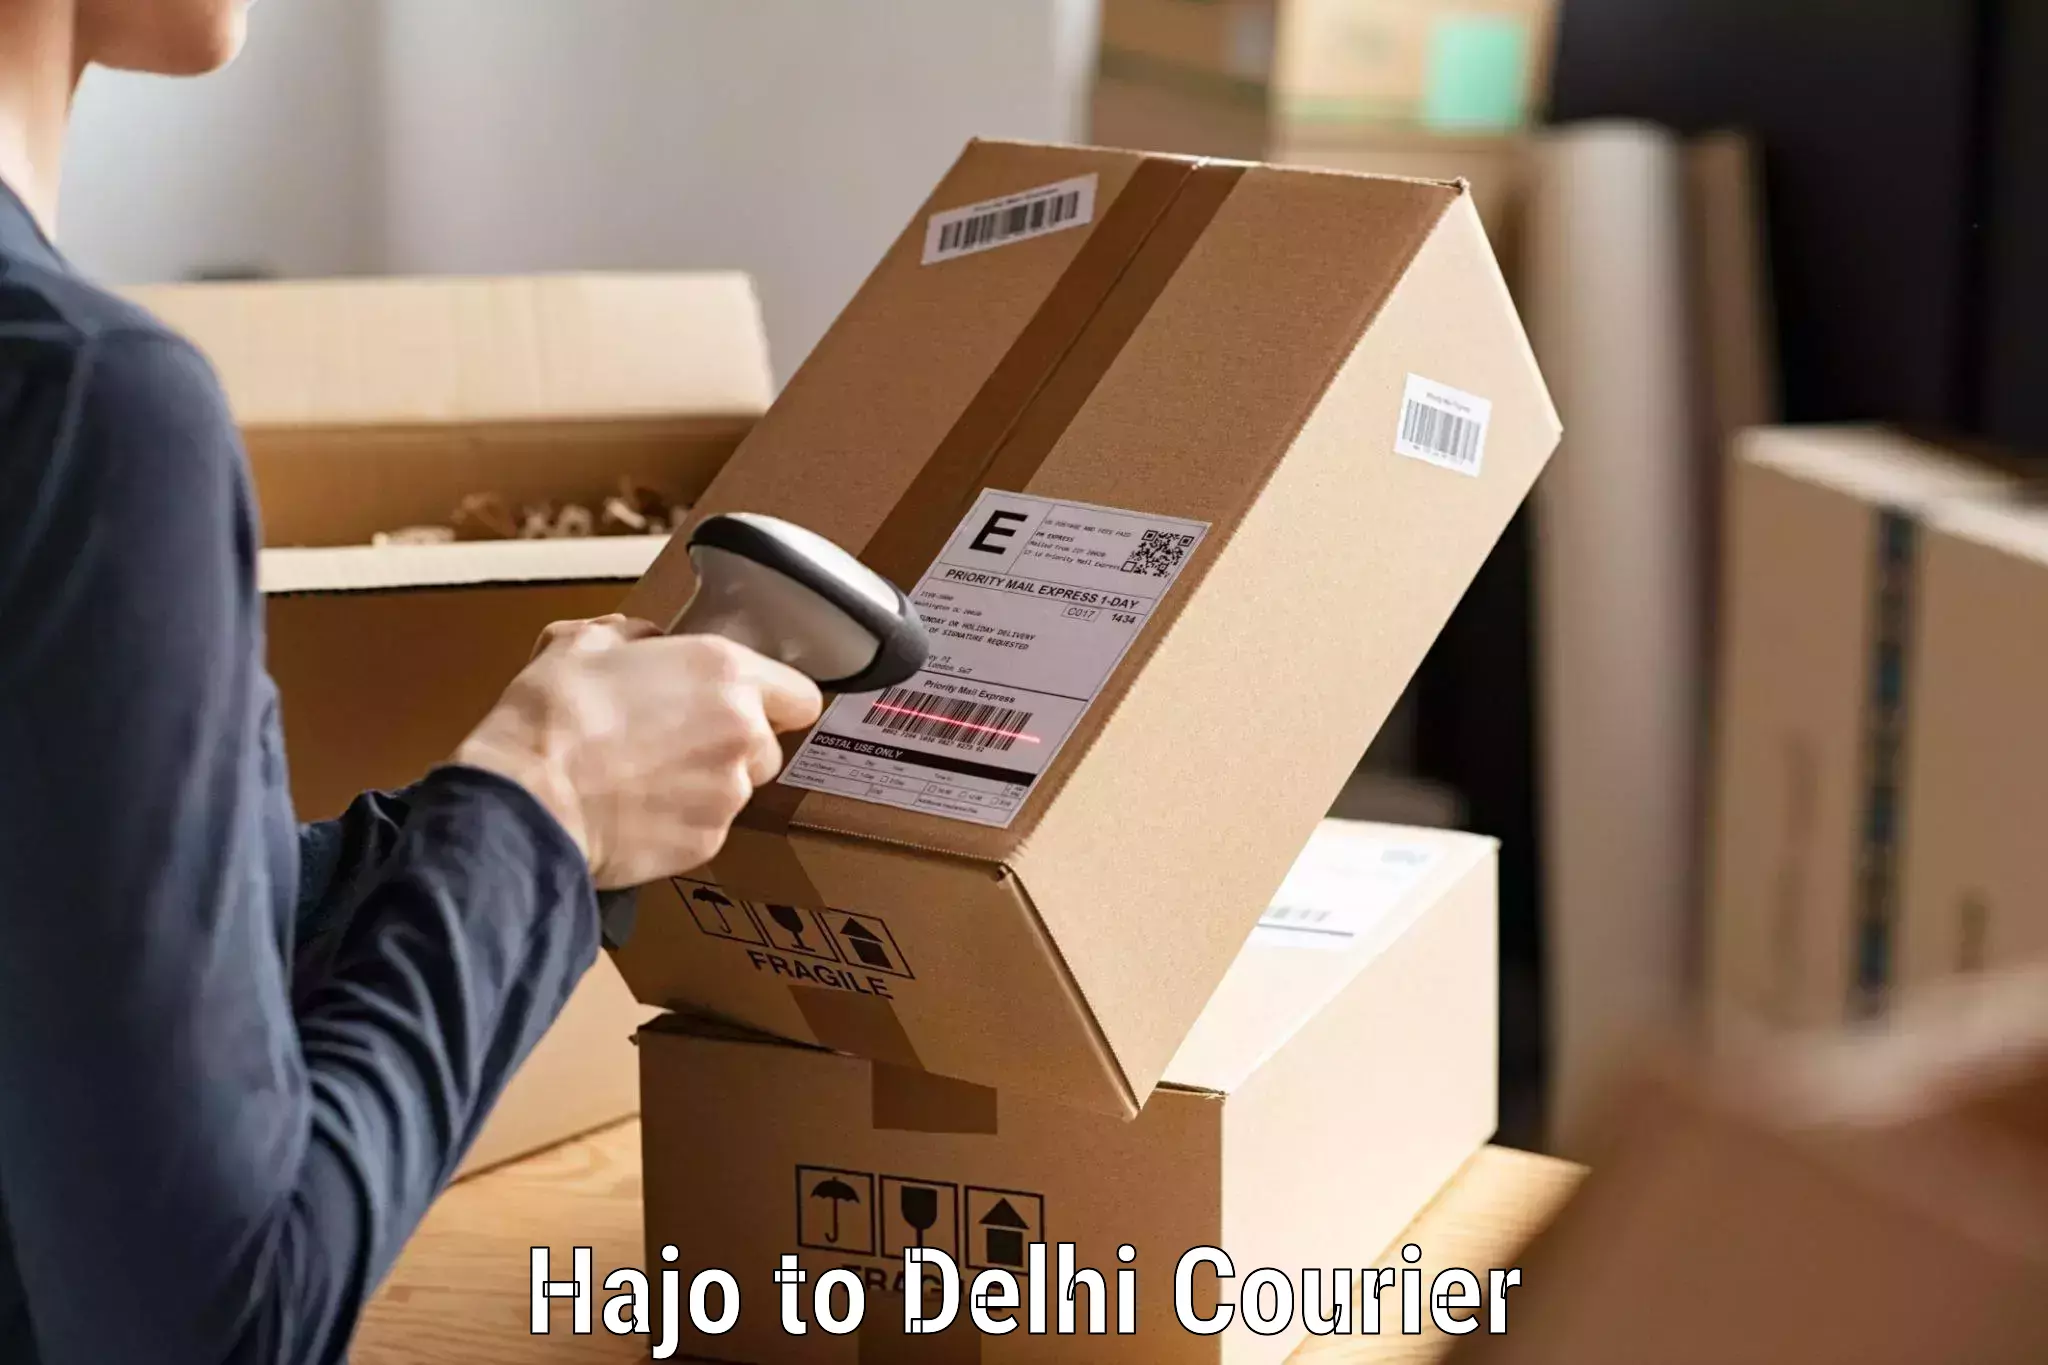 Courier service partnerships Hajo to NIT Delhi